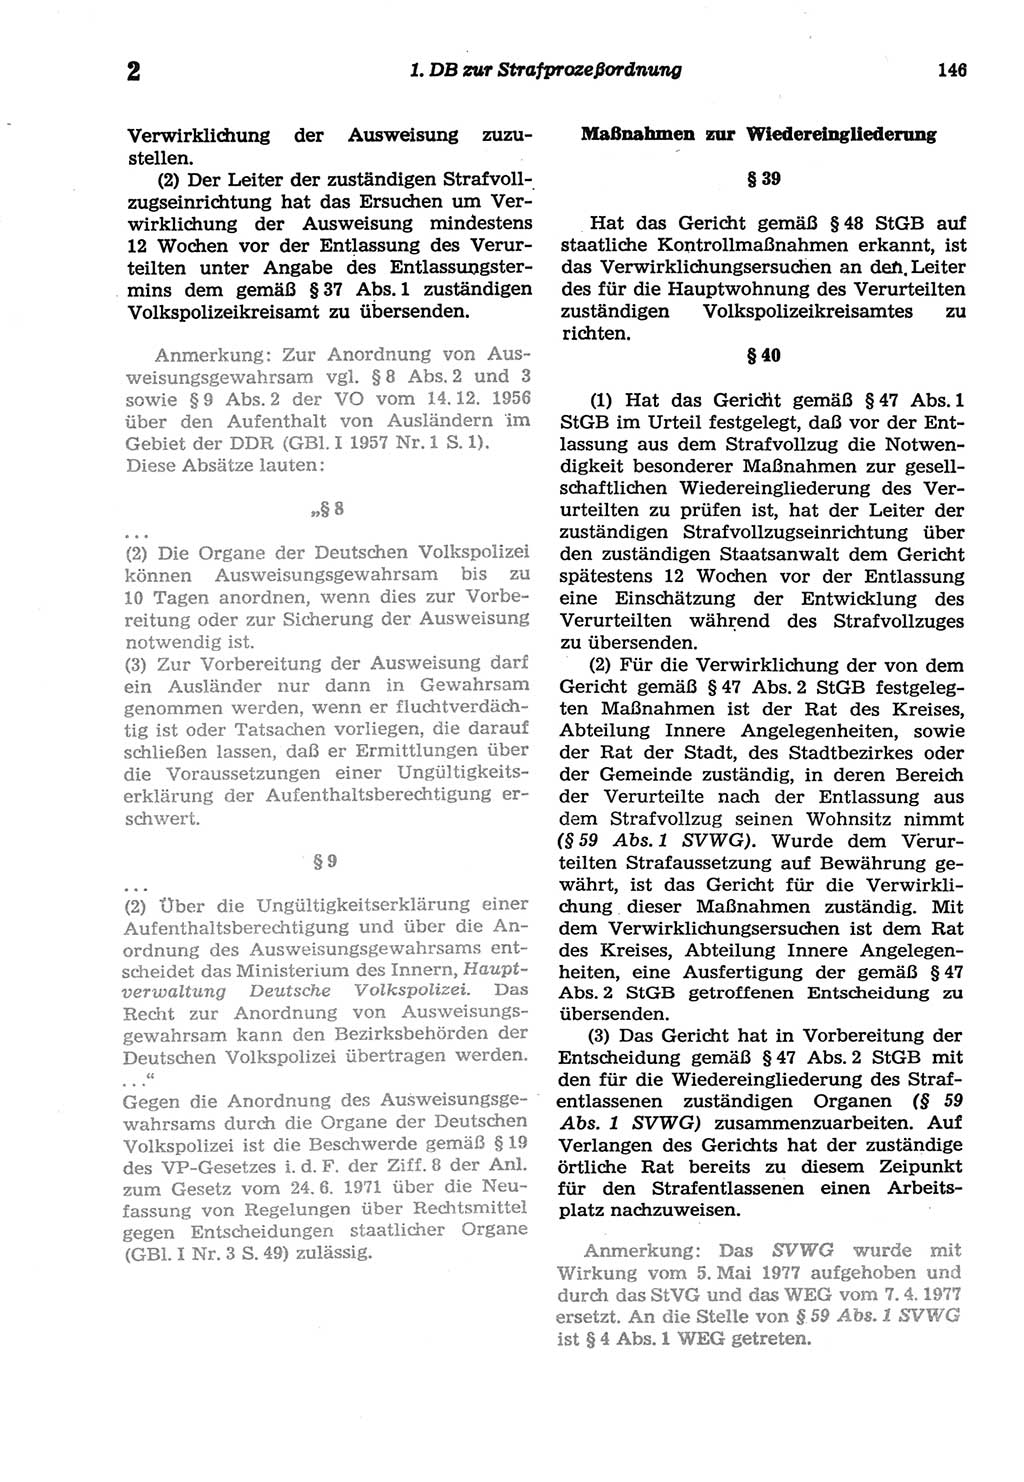 Strafprozeßordnung (StPO) der Deutschen Demokratischen Republik (DDR) sowie angrenzende Gesetze und Bestimmungen 1977, Seite 146 (StPO DDR Ges. Best. 1977, S. 146)